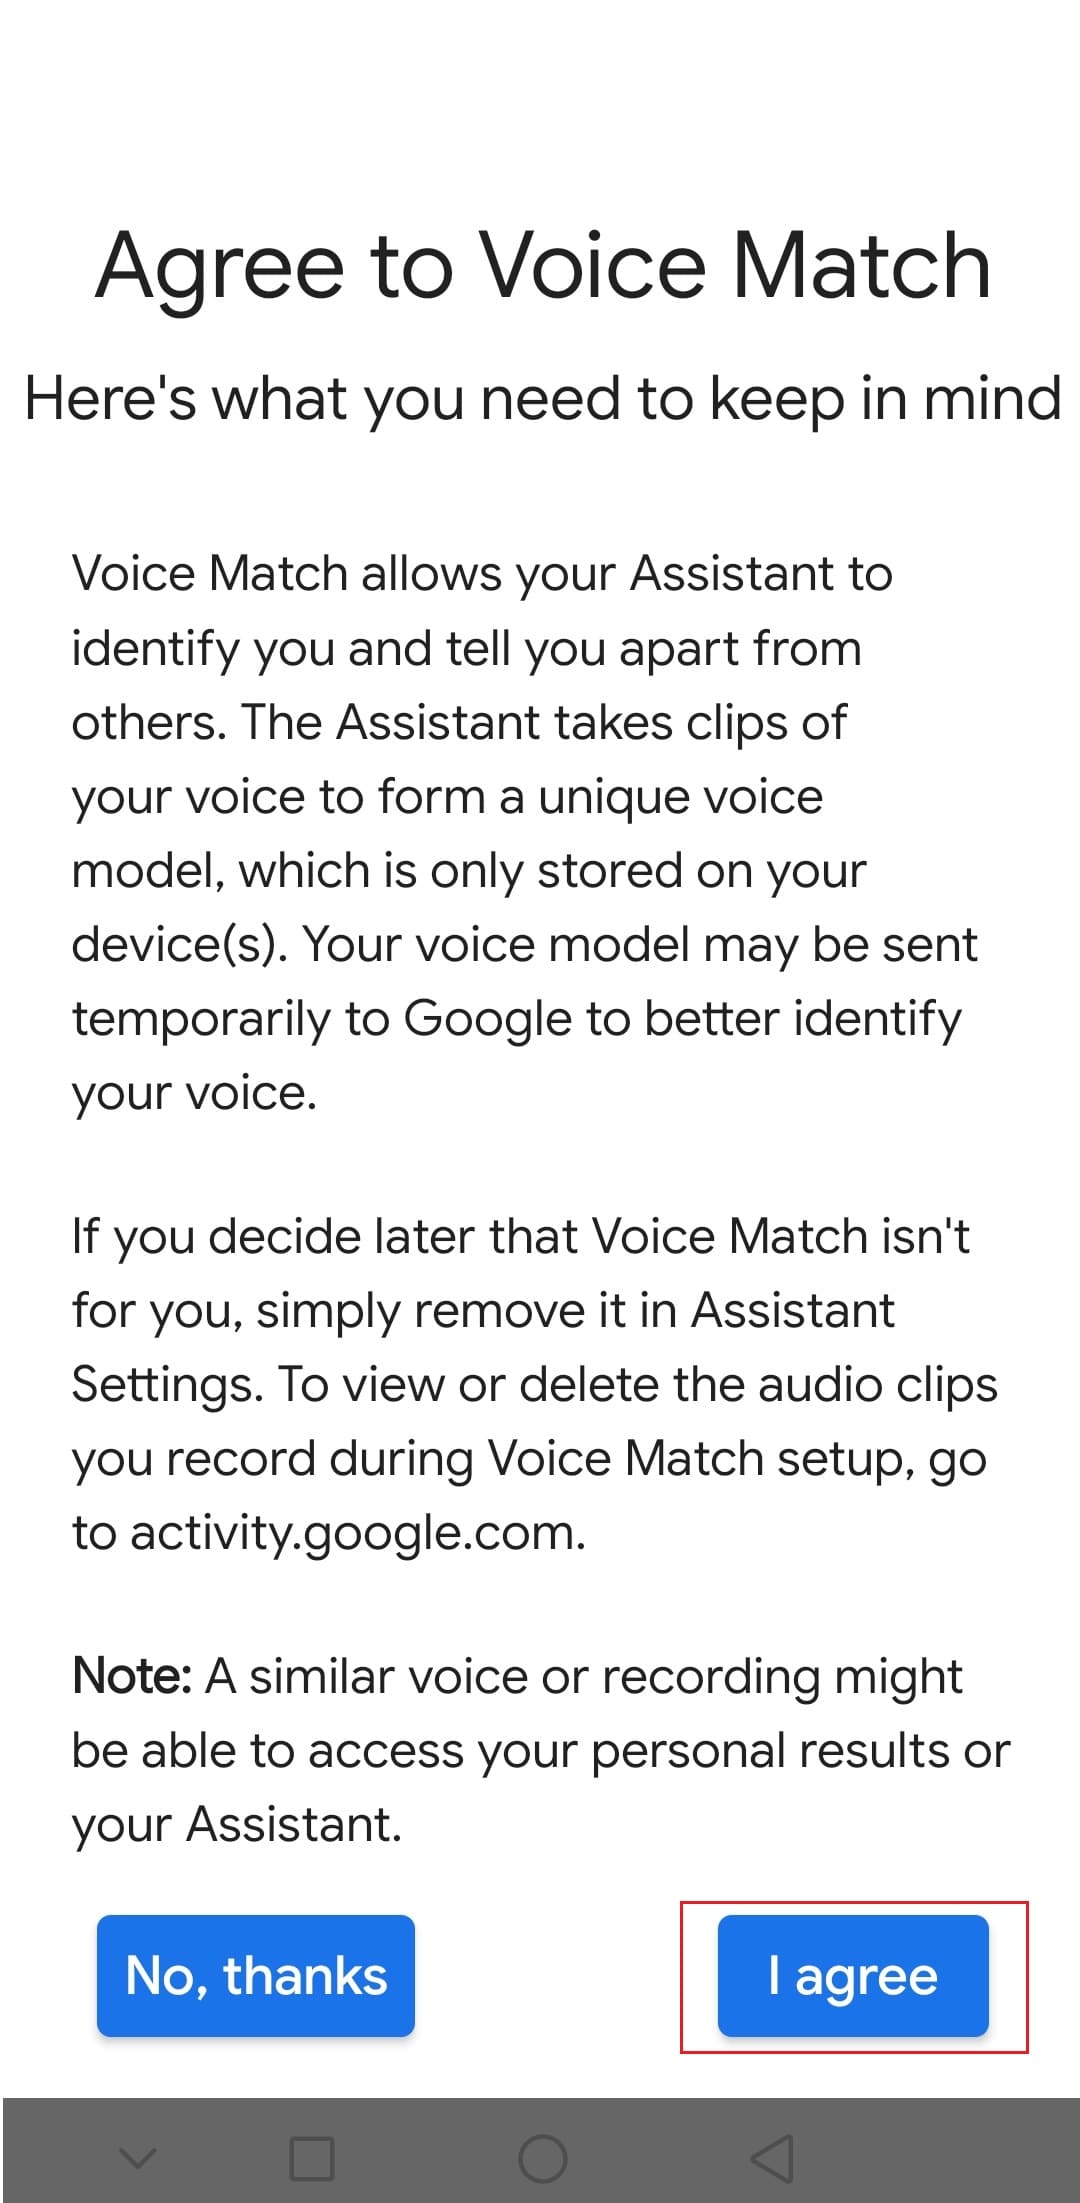 bakstelėkite parinktį Sutinku, kad sutiktumėte su Voice Match Google Android programoje